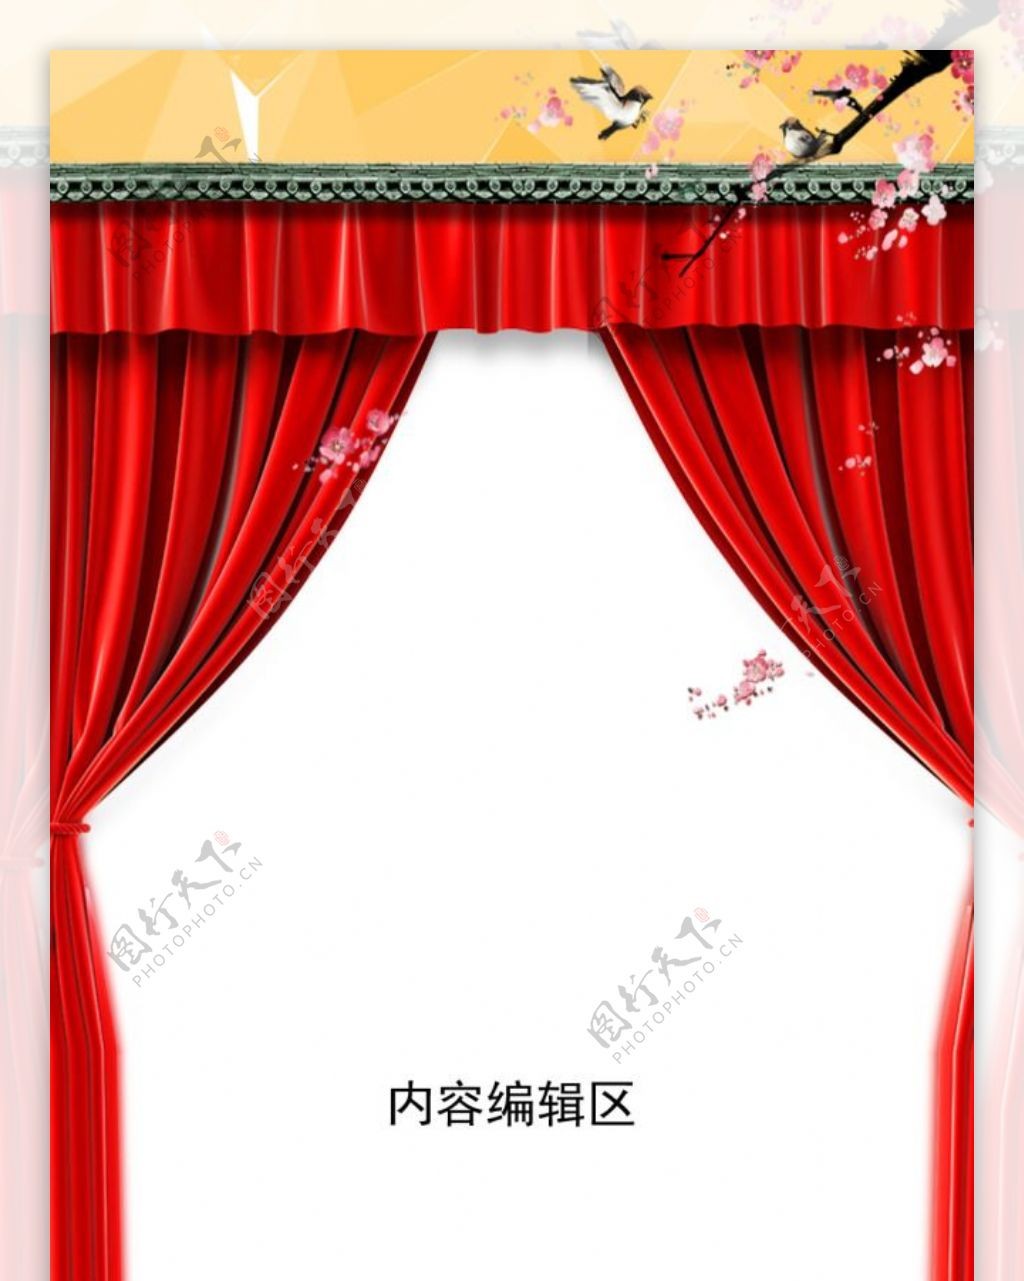 中国风精美背景展架设计模板画面